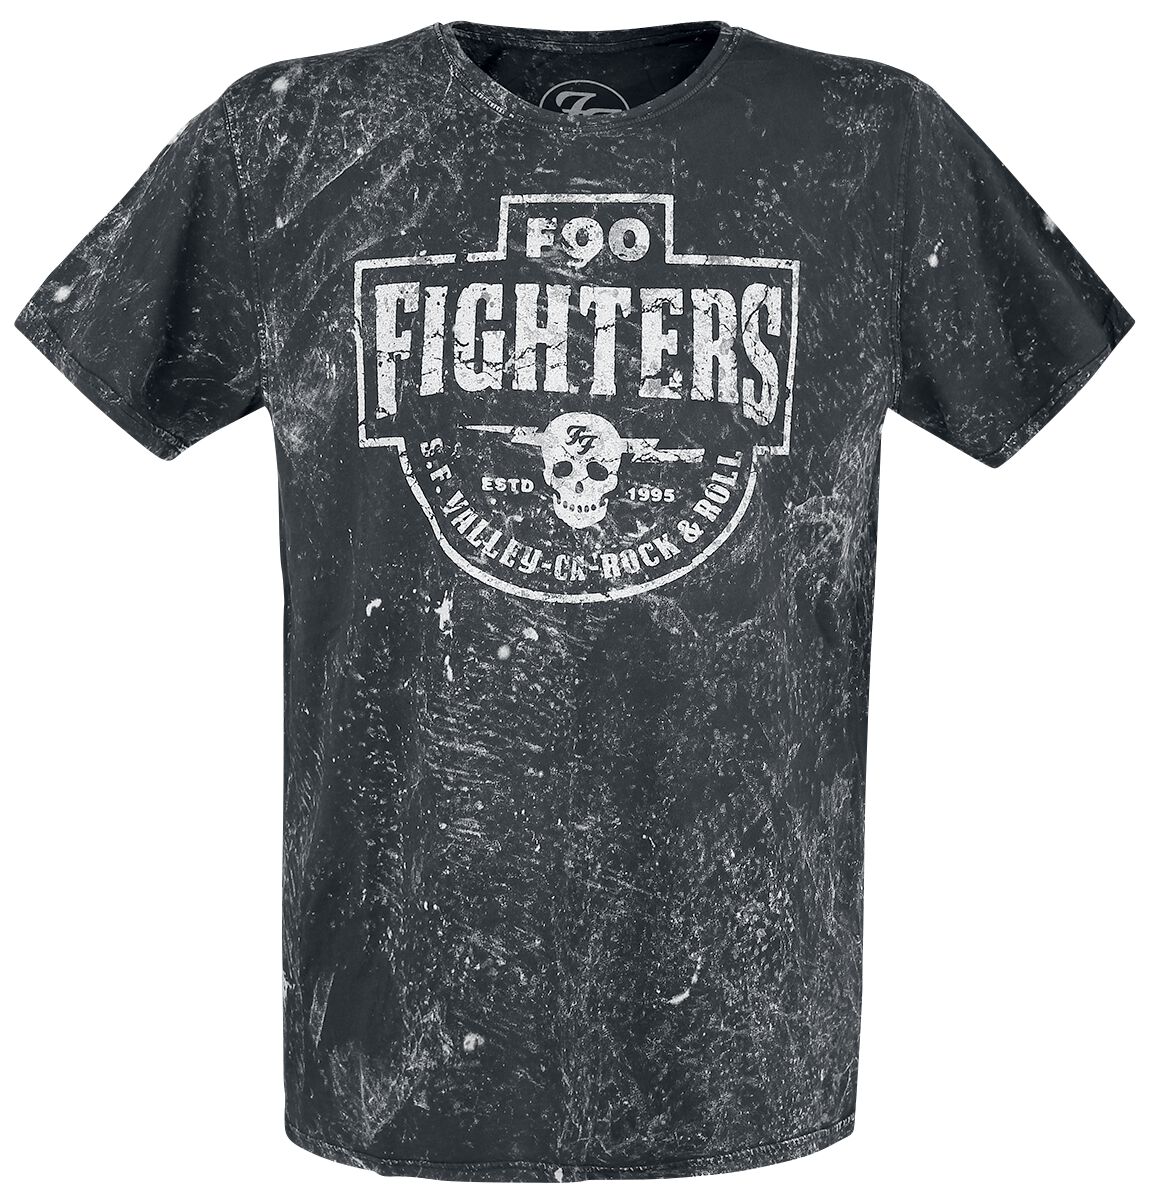 T-Shirt Manches courtes de Foo Fighters - Valley Rock&Roll - S à XXL - pour Homme - gris foncé